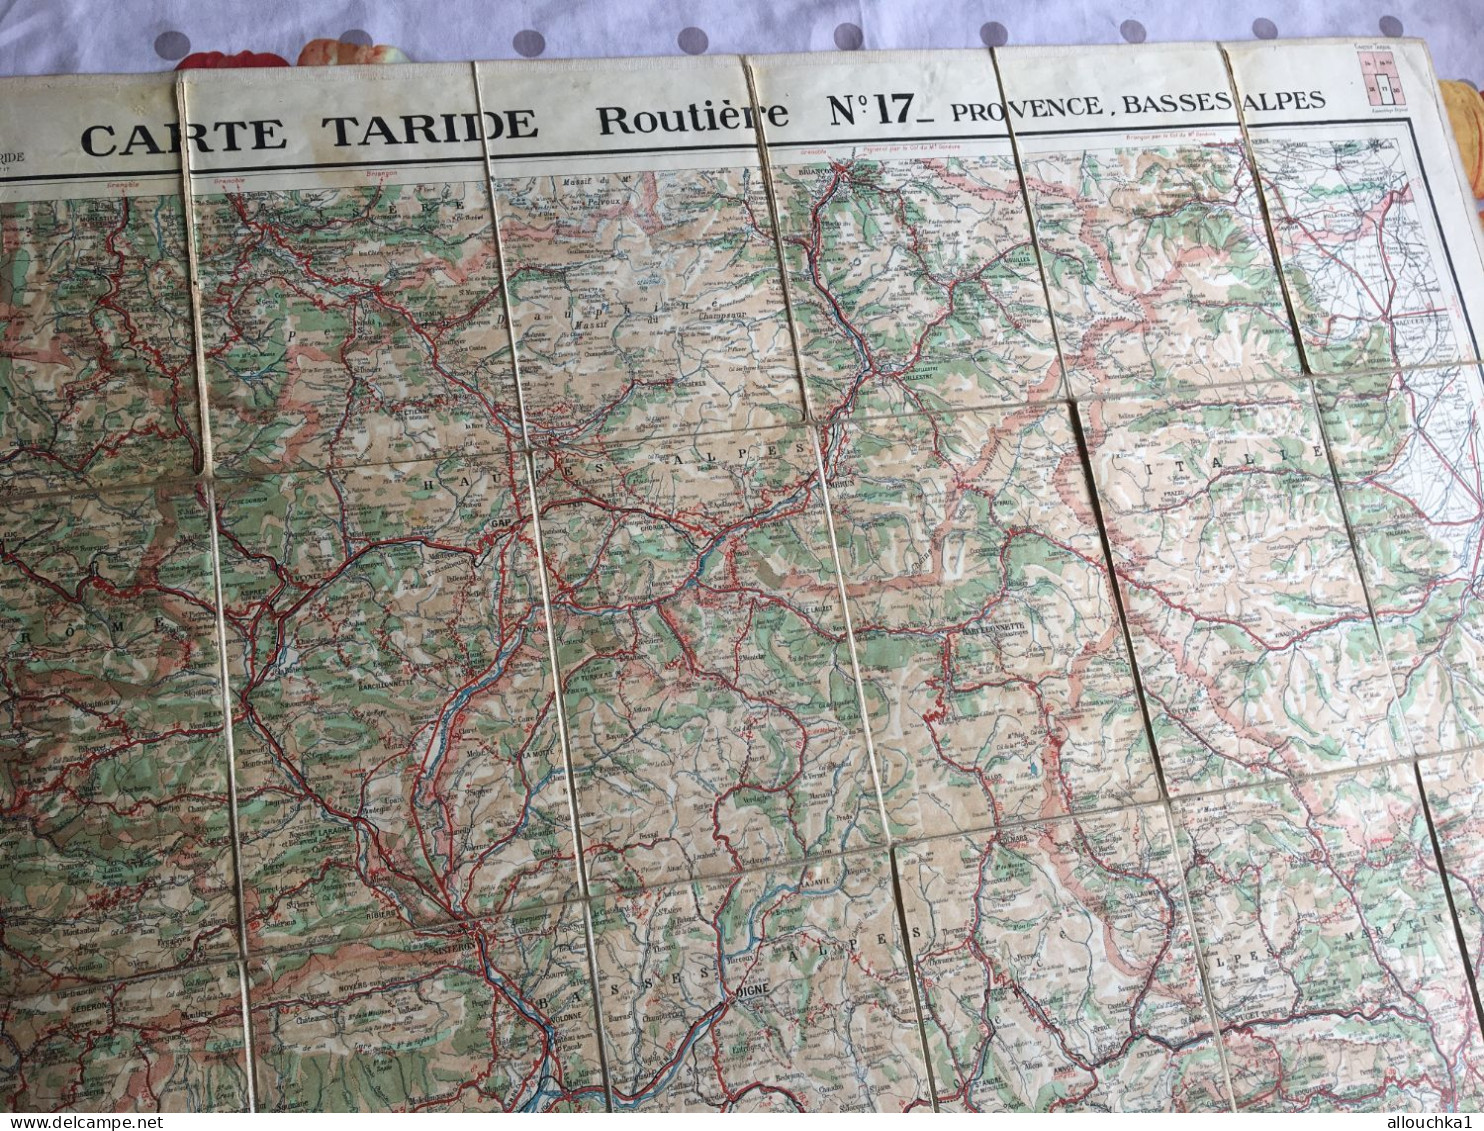 Carte Routière Taride n°17 Provence Basses alpes de collectif format broché - Livre  entoilé 1925 ?